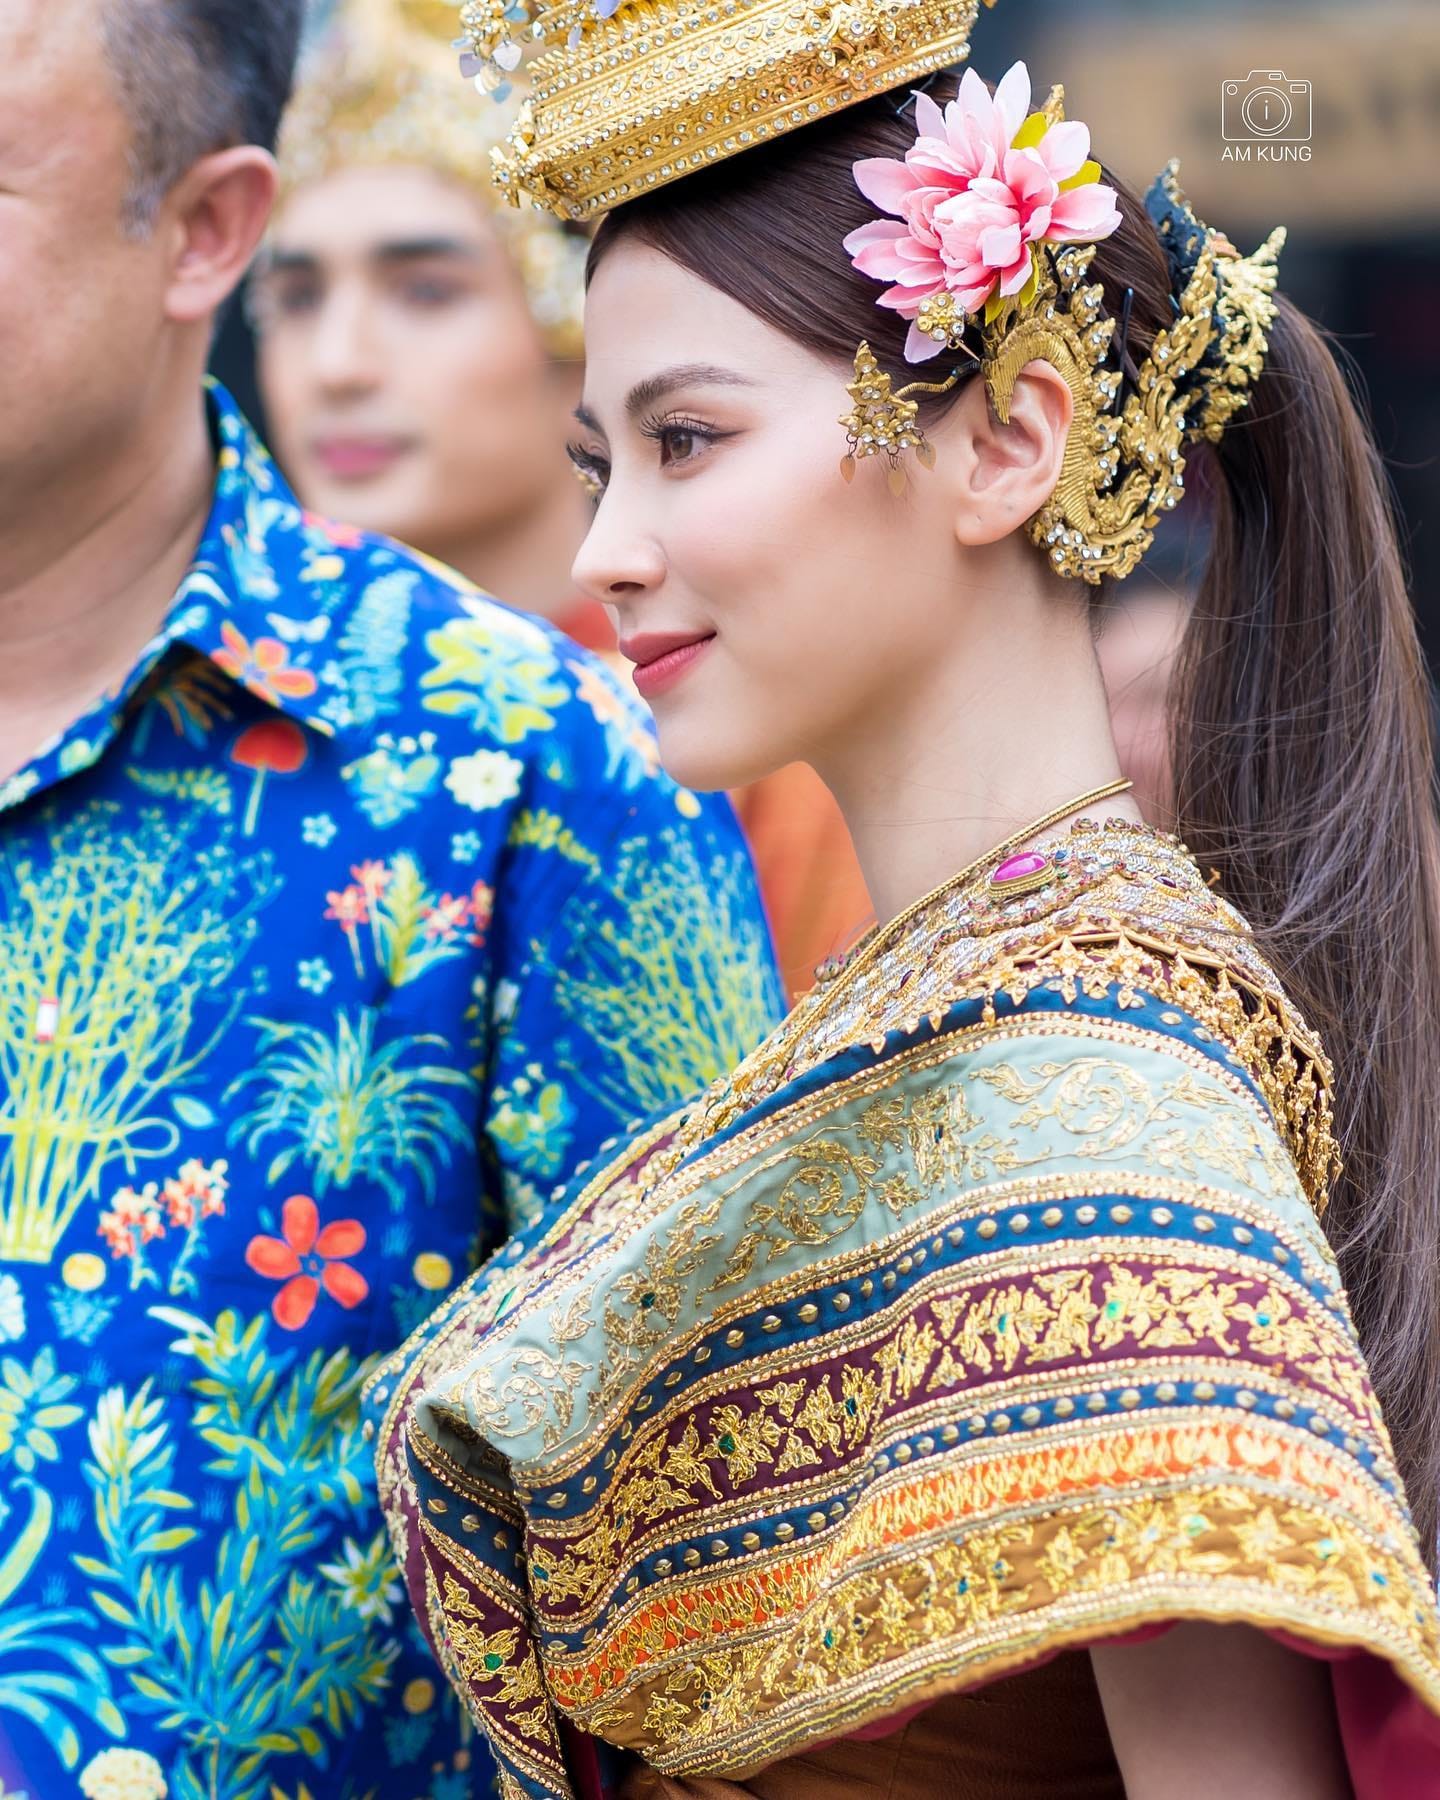 “Mỹ nhân Thái Lan” Baifern gây náo loạn với nhan sắc cực phẩm hóa thân thành “Nữ thần Songkran” 2023 - ảnh 5